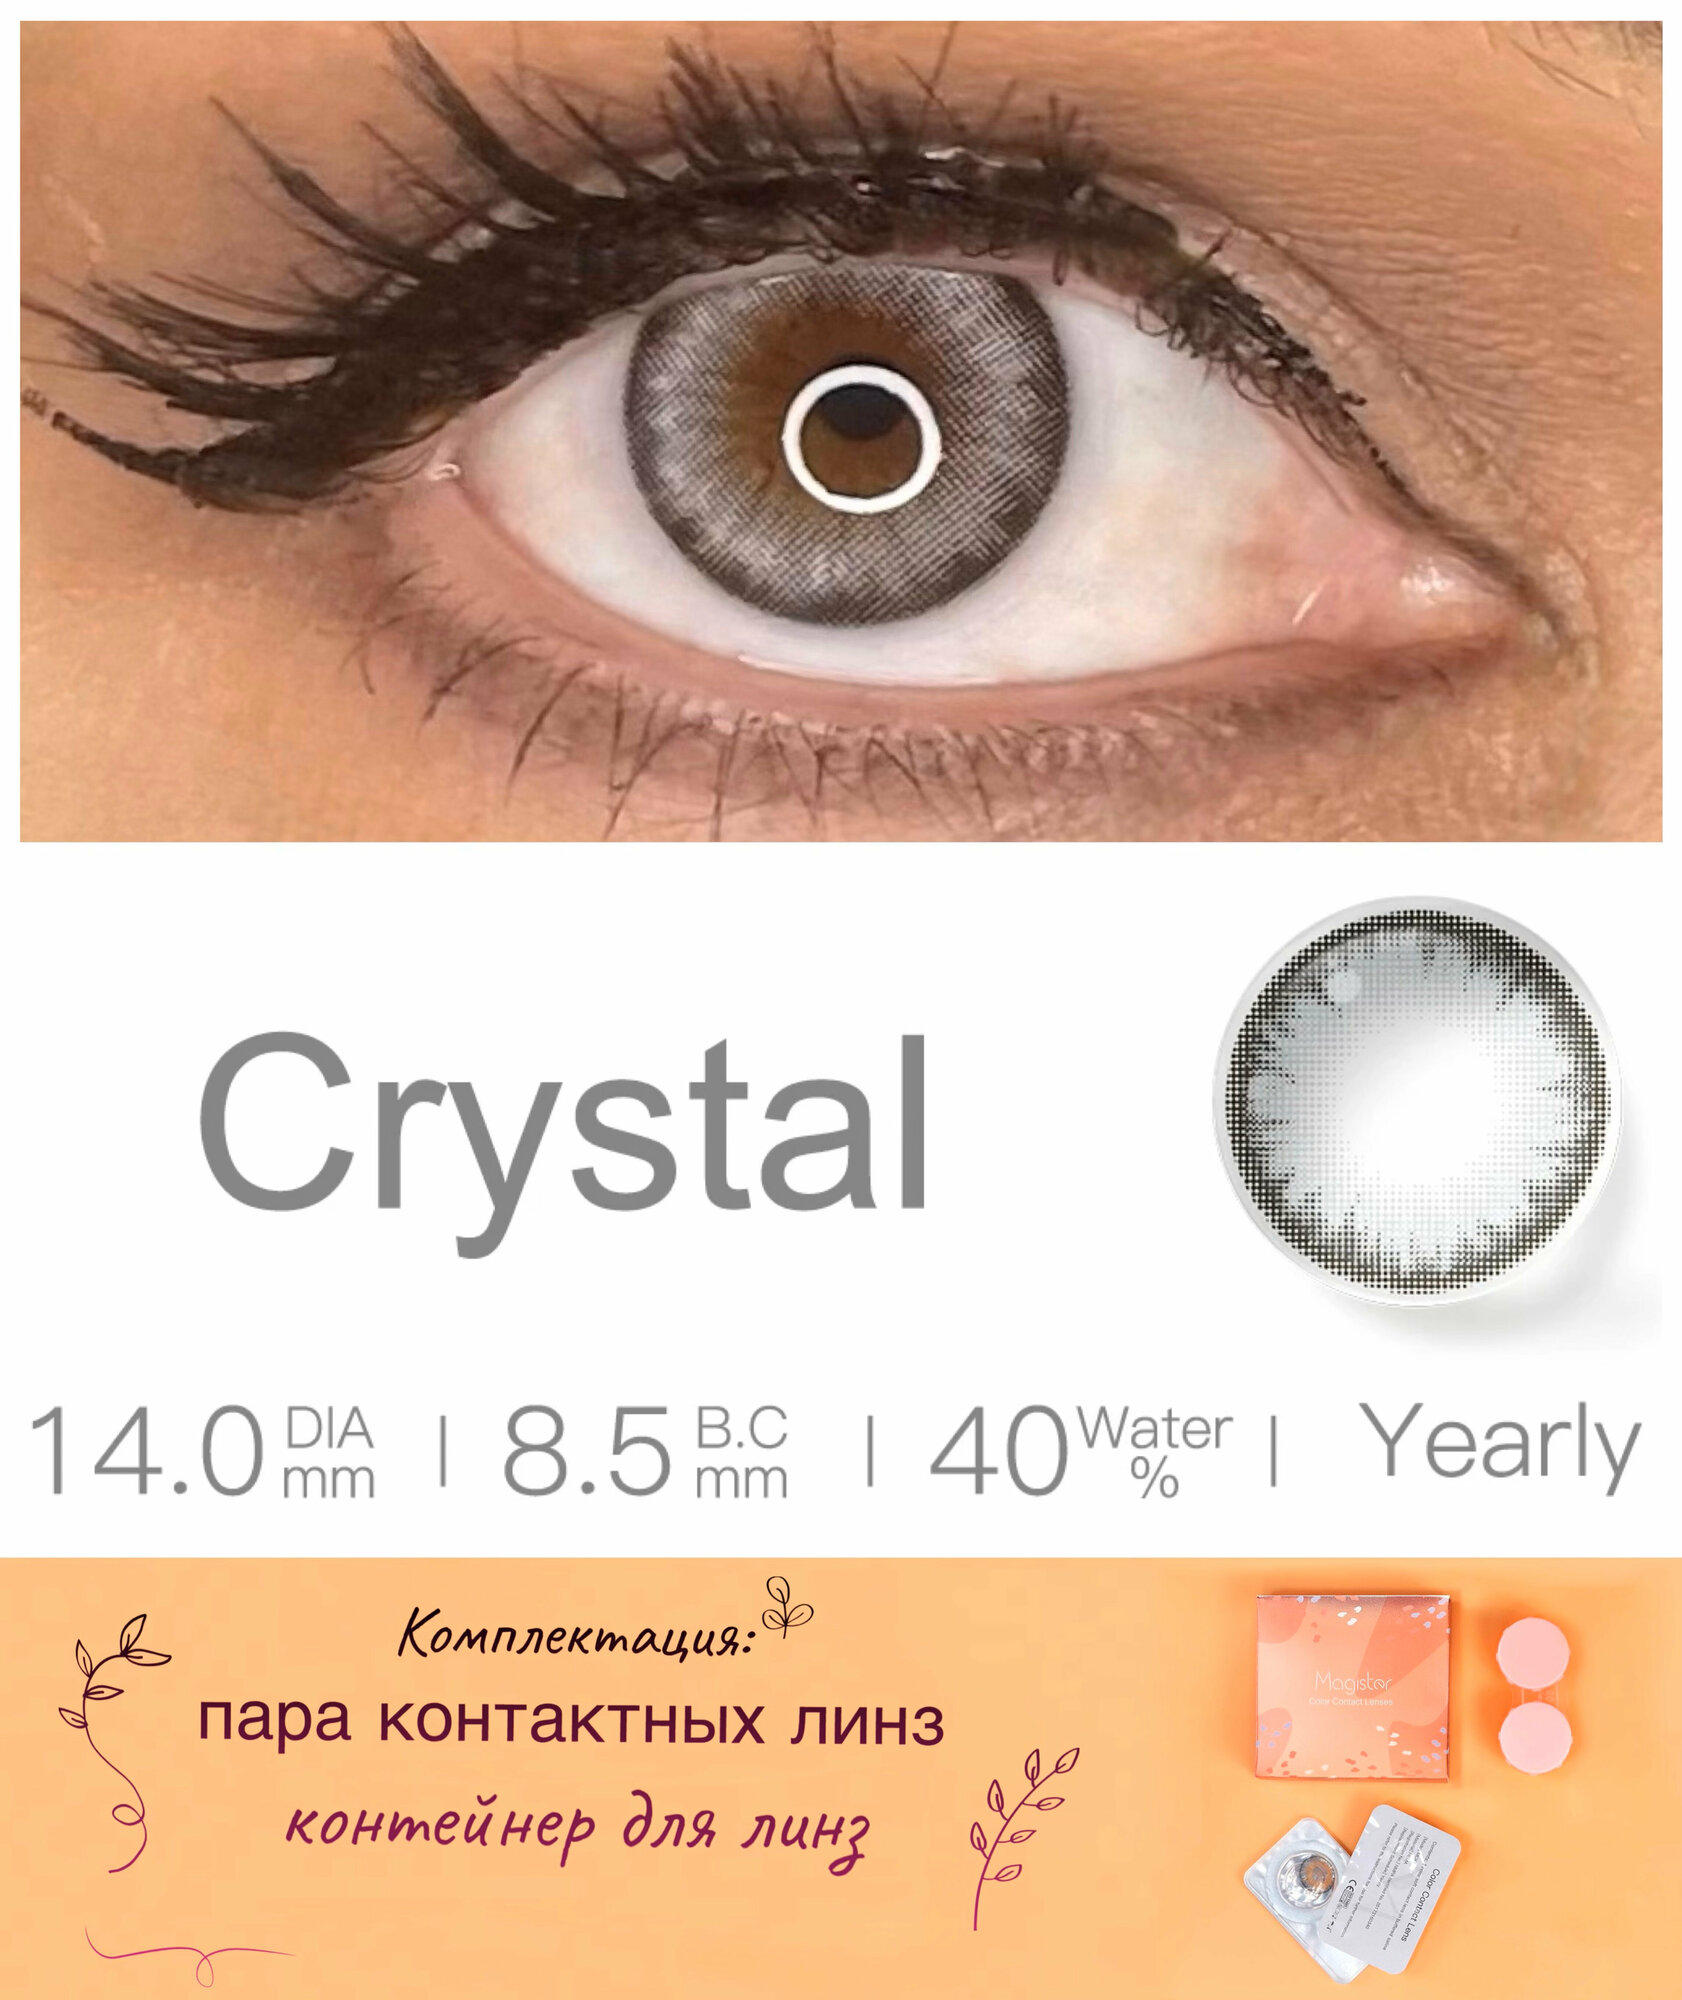 Цветные контактные линзы MAGISTER без коррекции 1 год, D 0.00, 14.0, R 8.5, 40%, цвет crystal (серый). Комплектация: 2шт линзы, контейнер